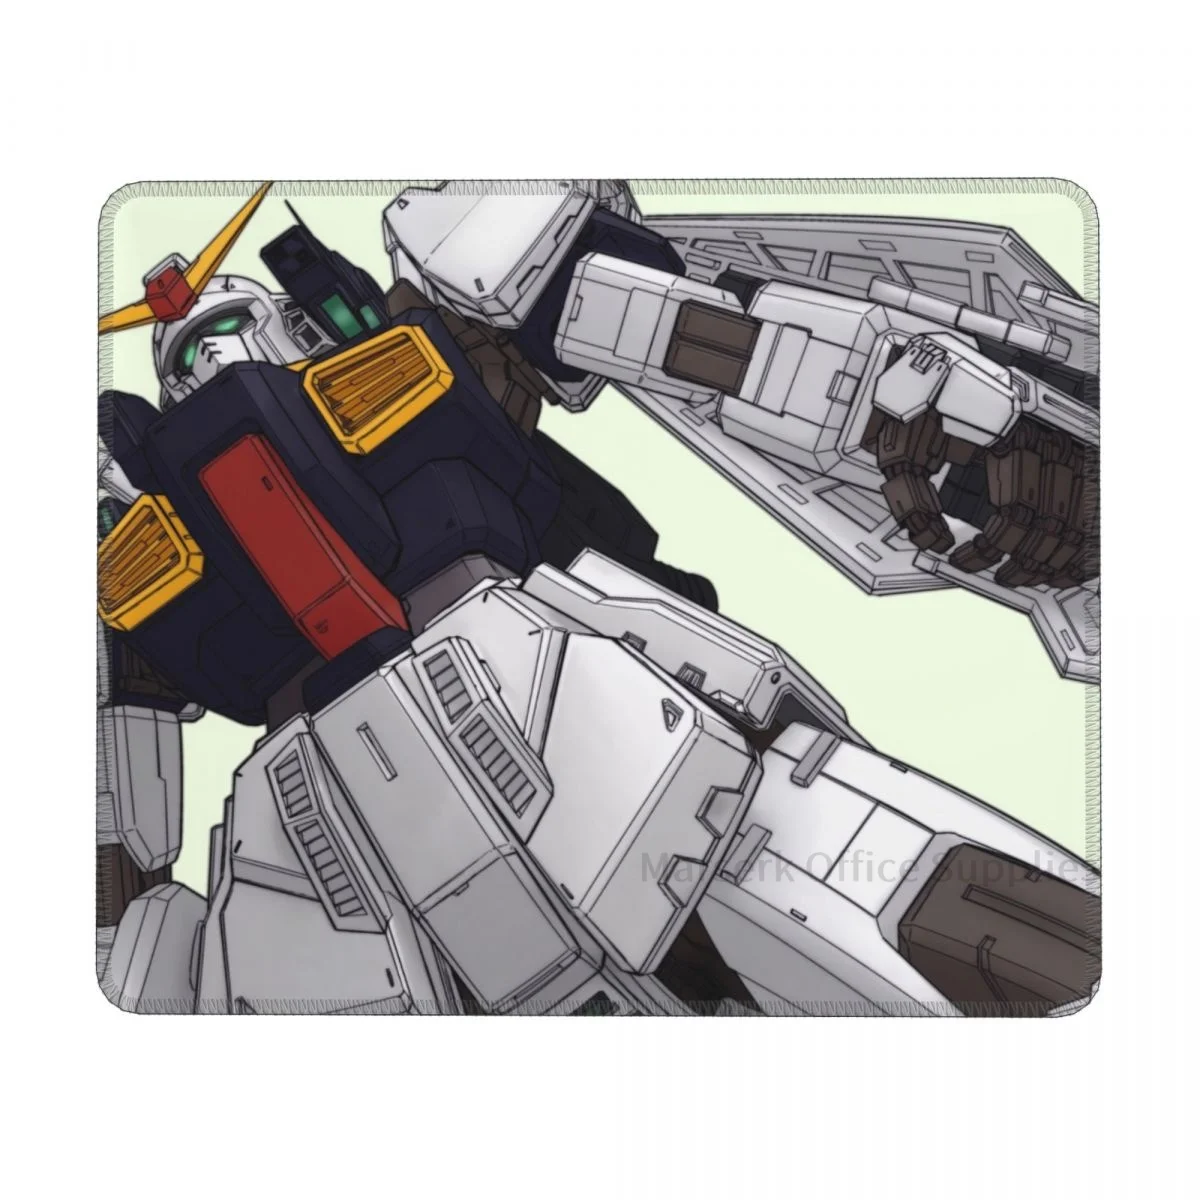 

RX-178 коврик для мыши Gundam, игровой Настольный коврик для клавиатуры, креативный Настольный коврик с блокировкой границы, противоскользящий п...